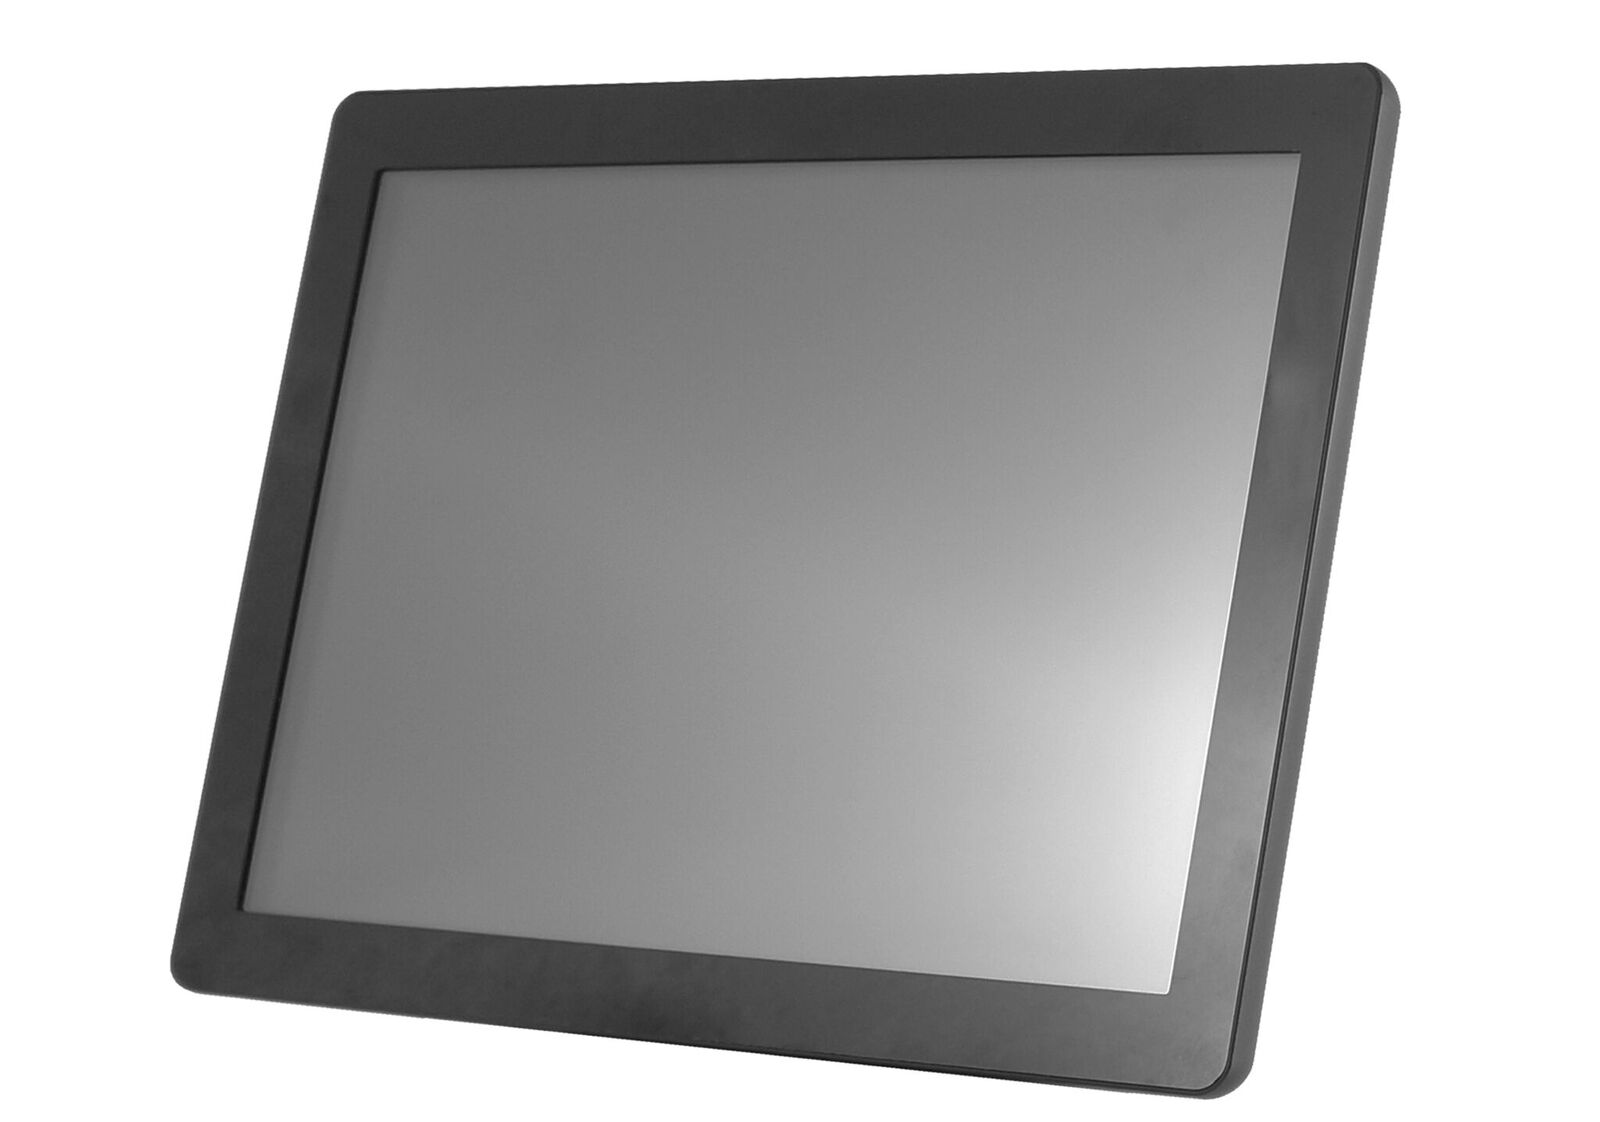 10'' Glass display - 800x600, 250nt,VGA